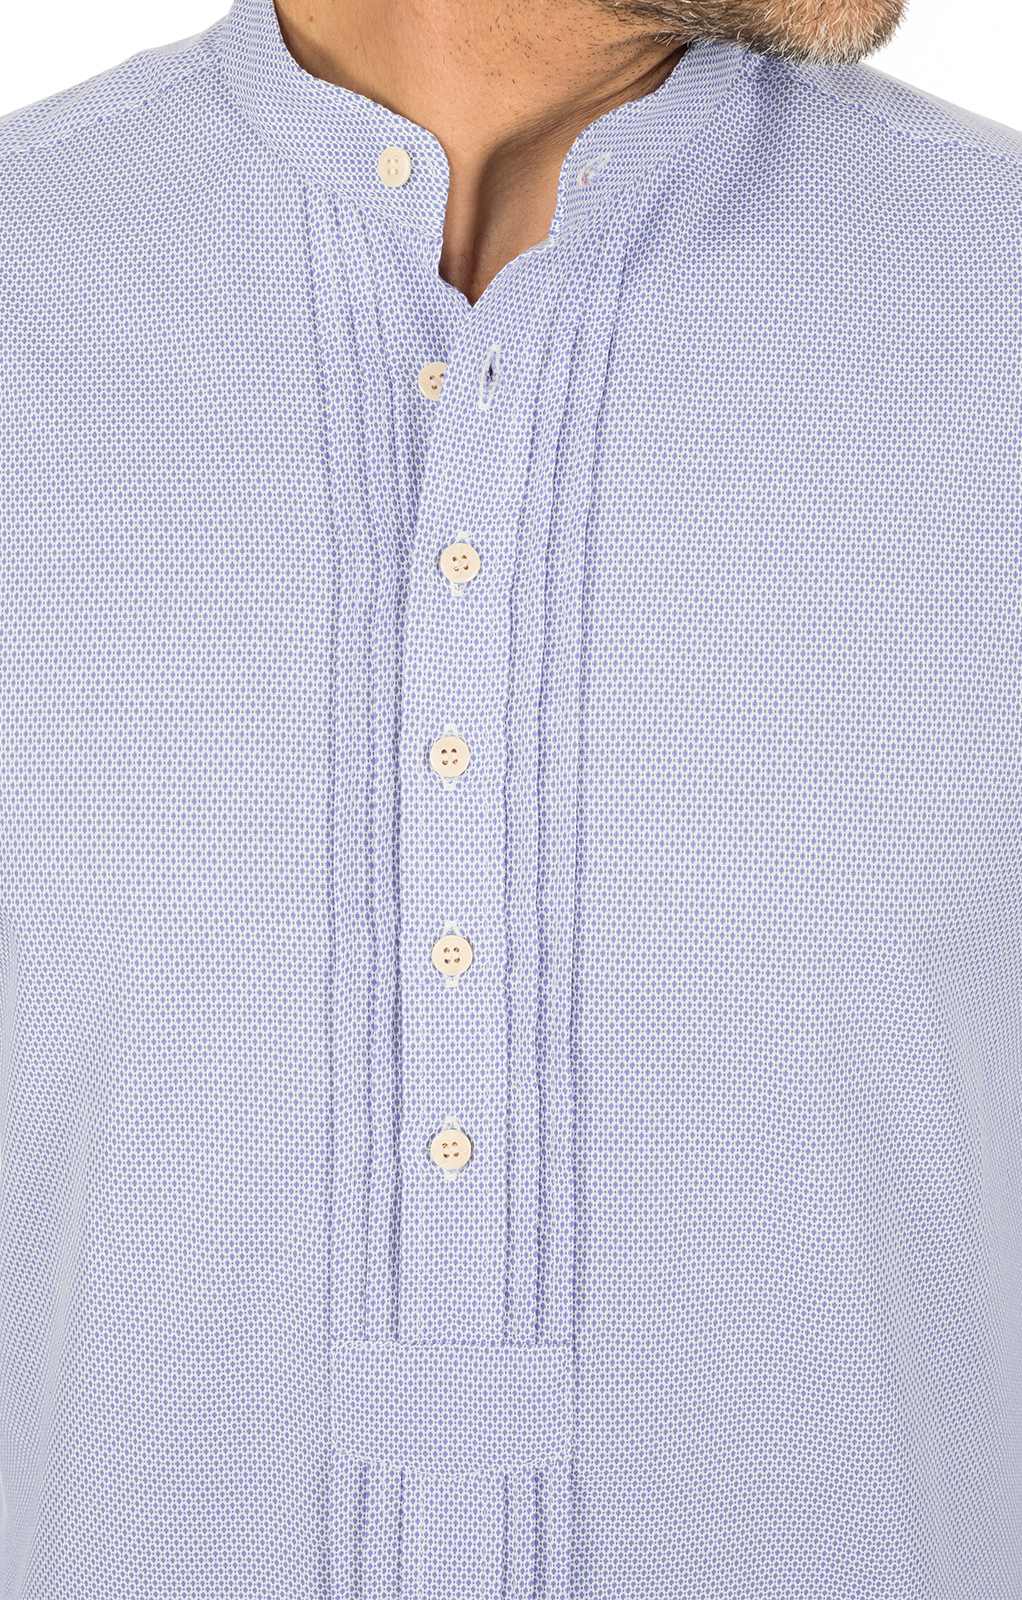 weitere Bilder von German traditional shirt Pfoad GRATANO blue